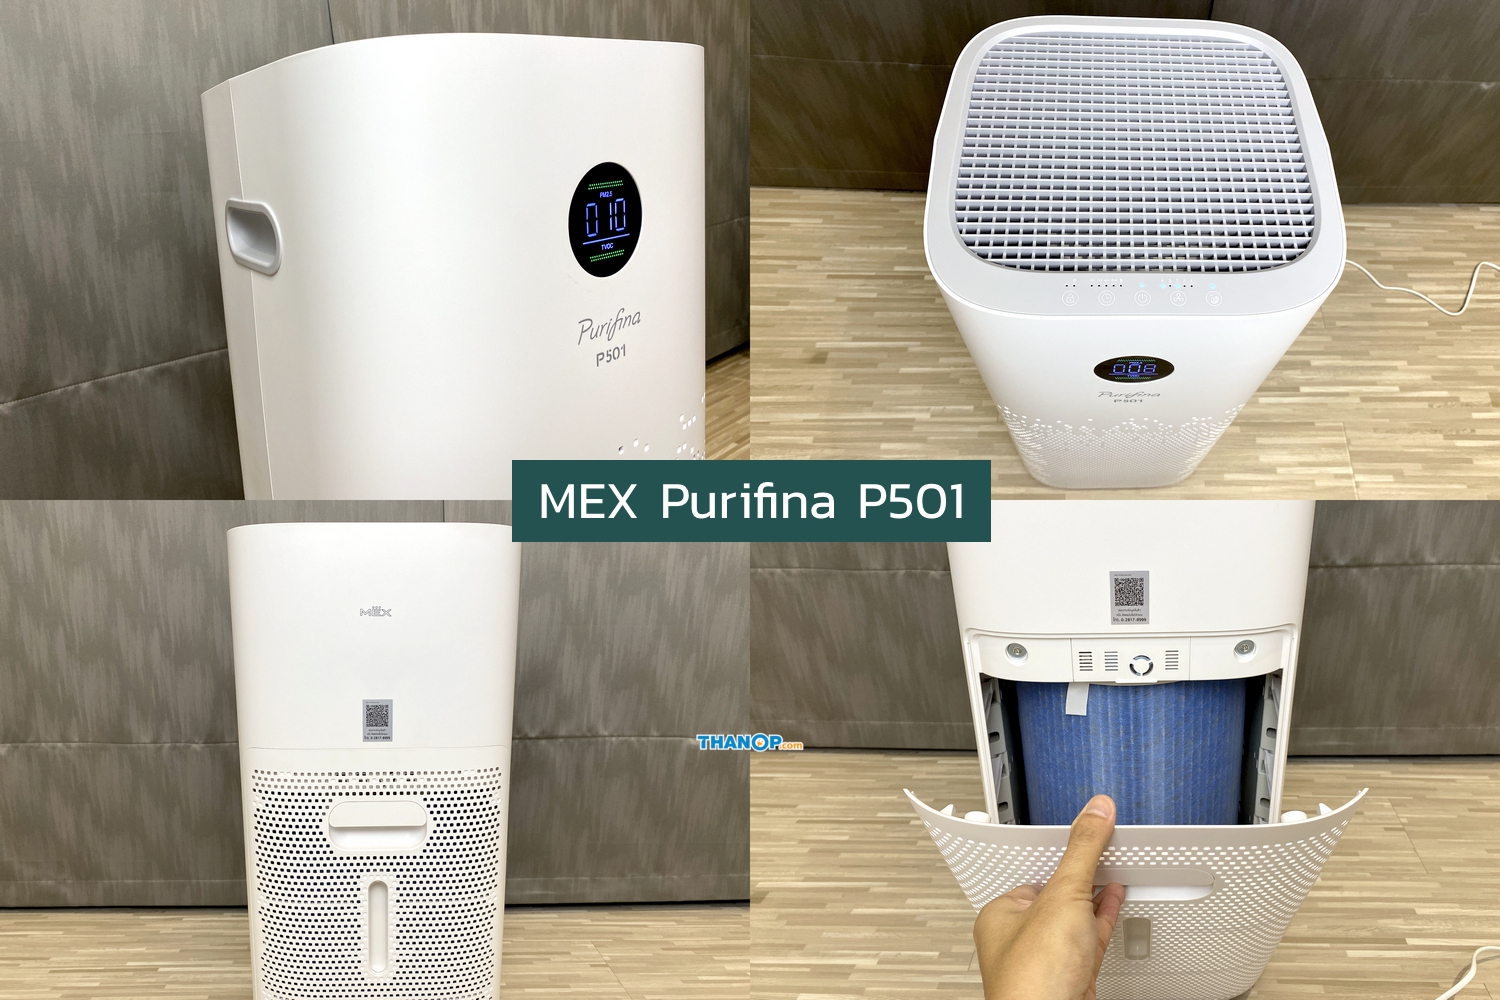 MEX Purifina P501 Working